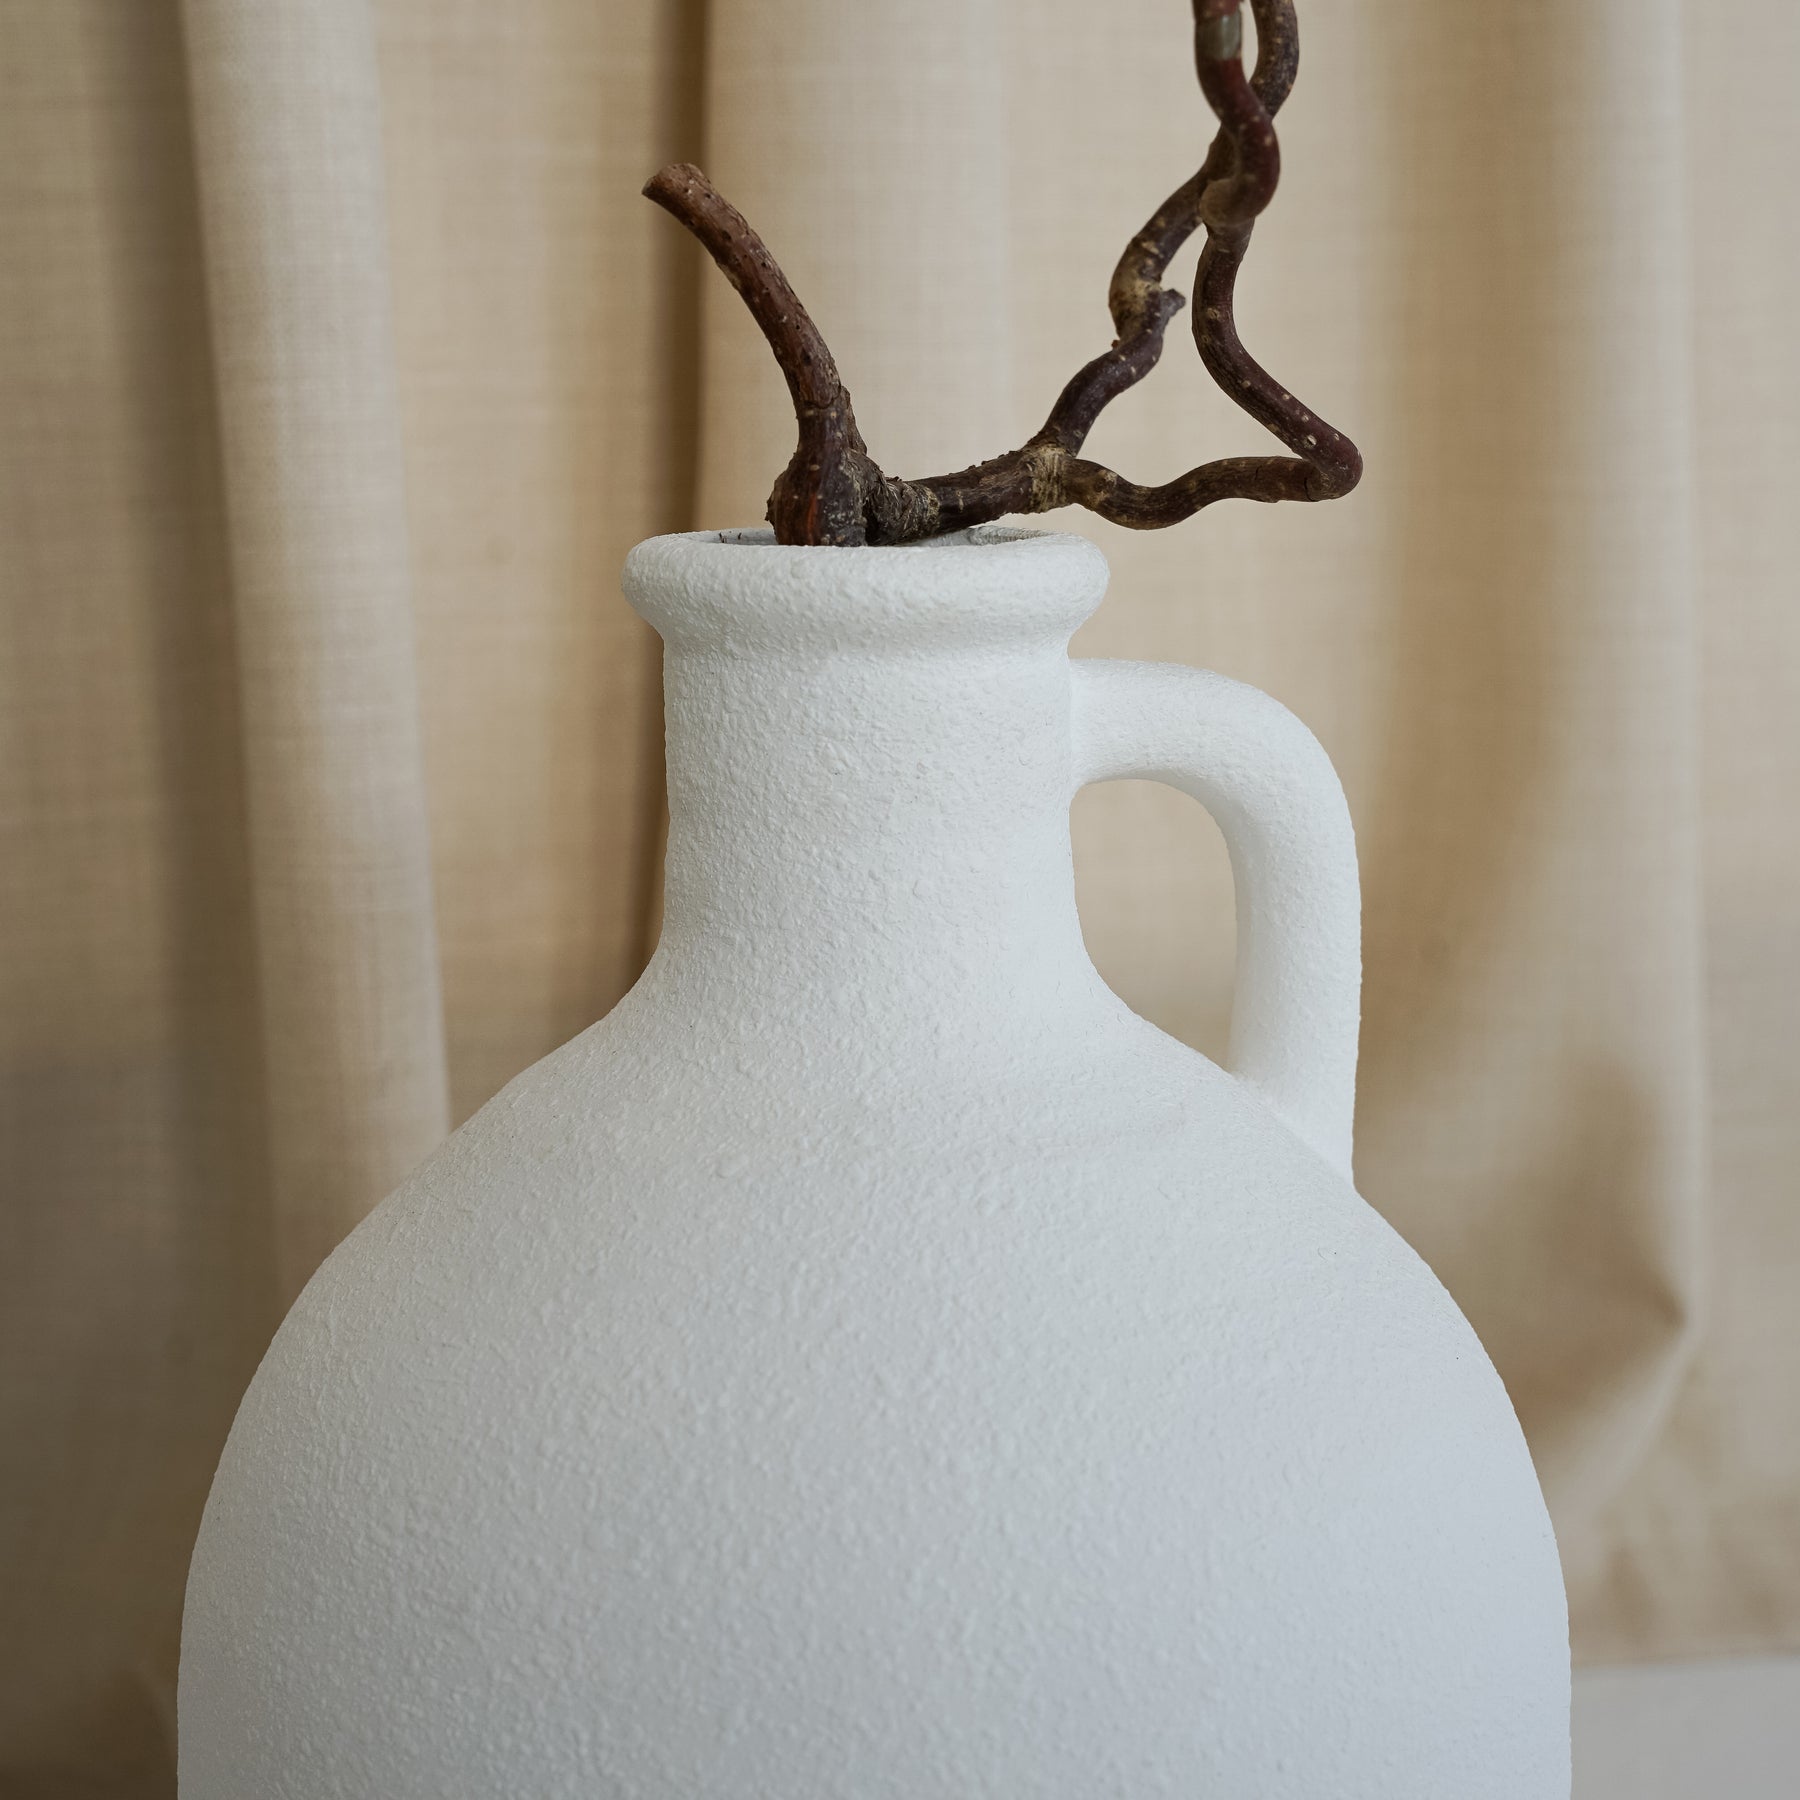 Torrano - White Textured Ceramic Large Vase